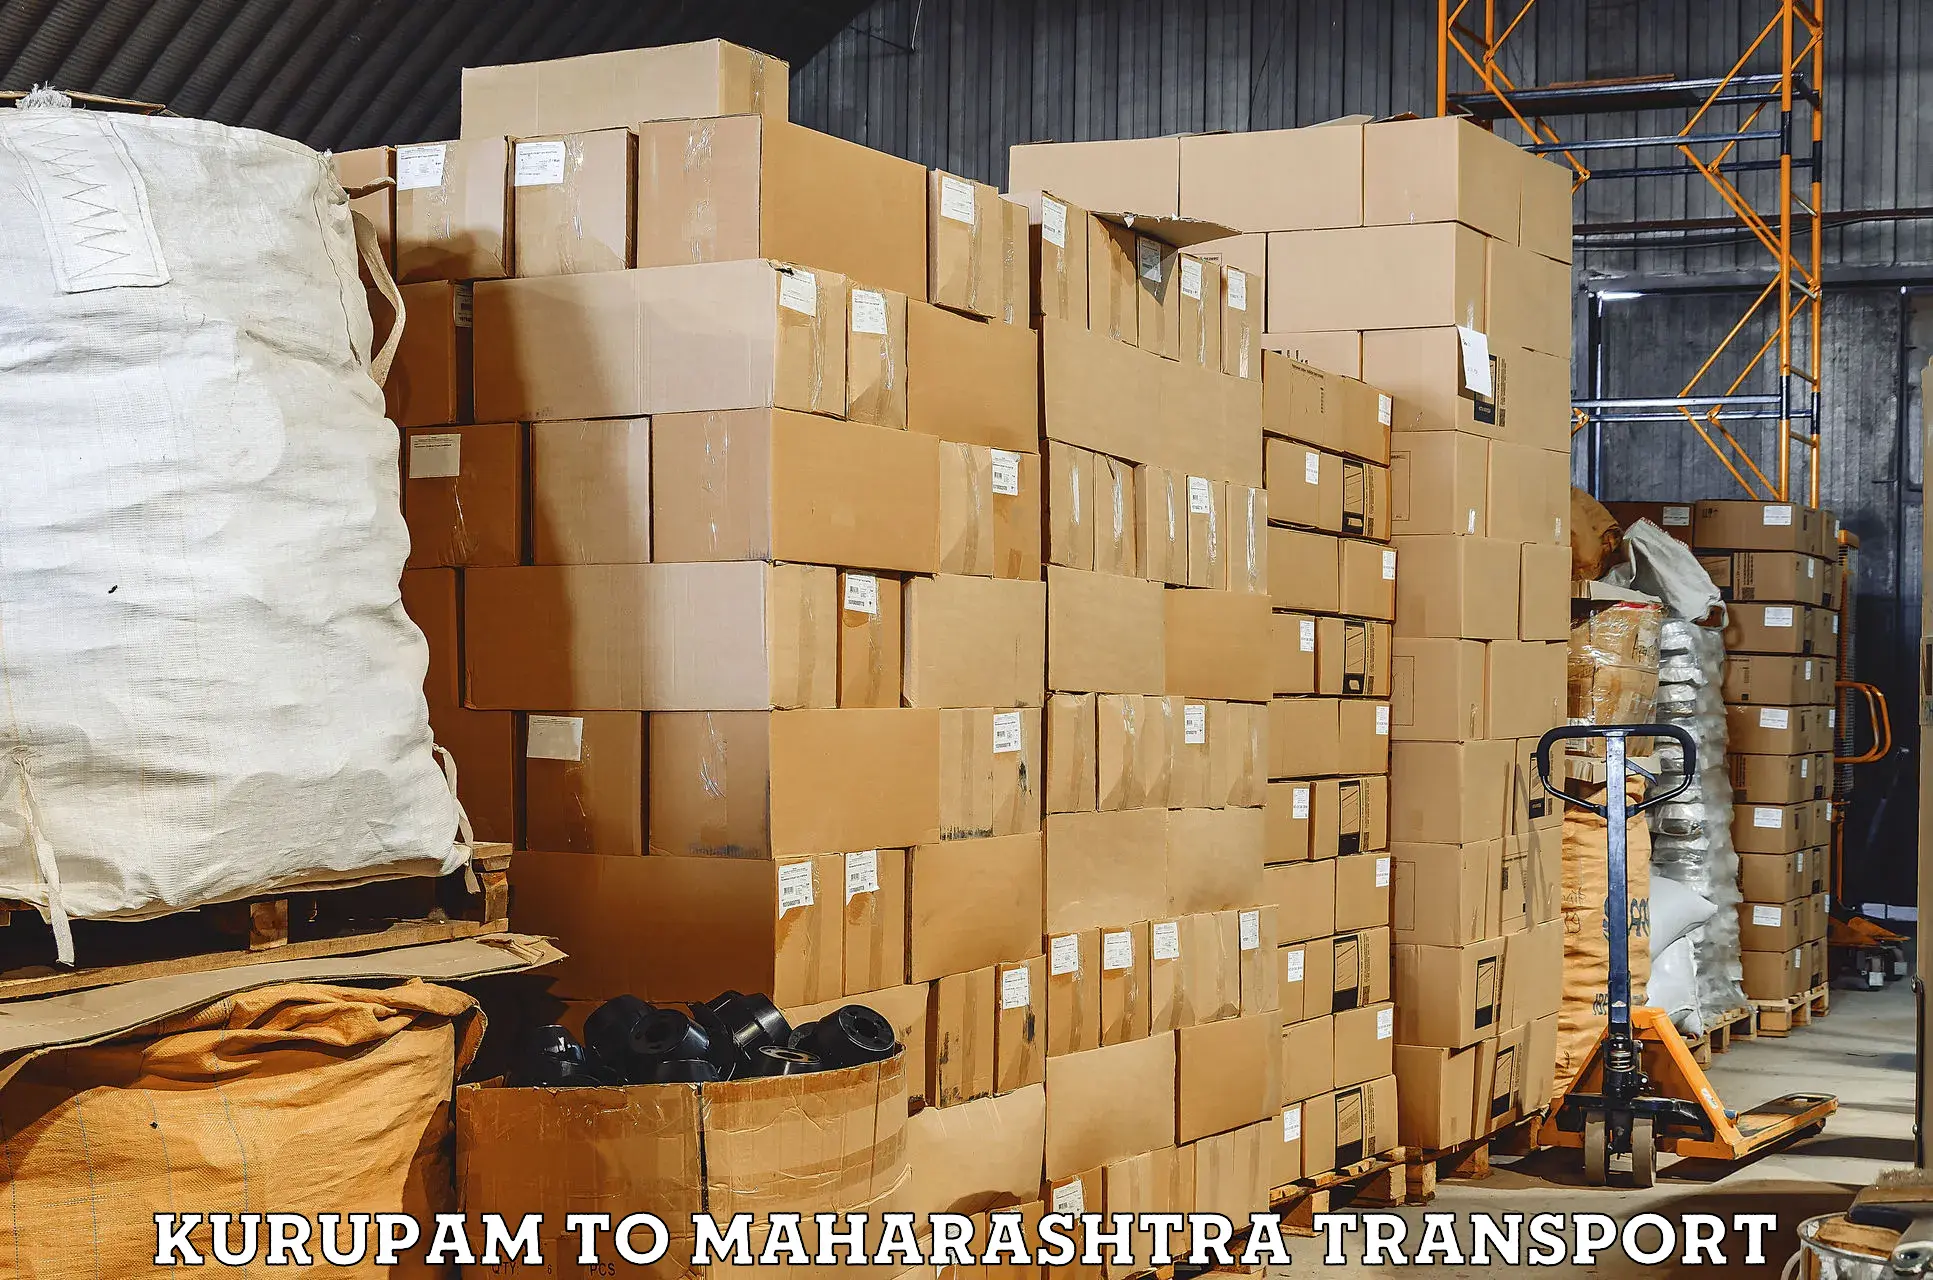 Air freight transport services Kurupam to Nashik